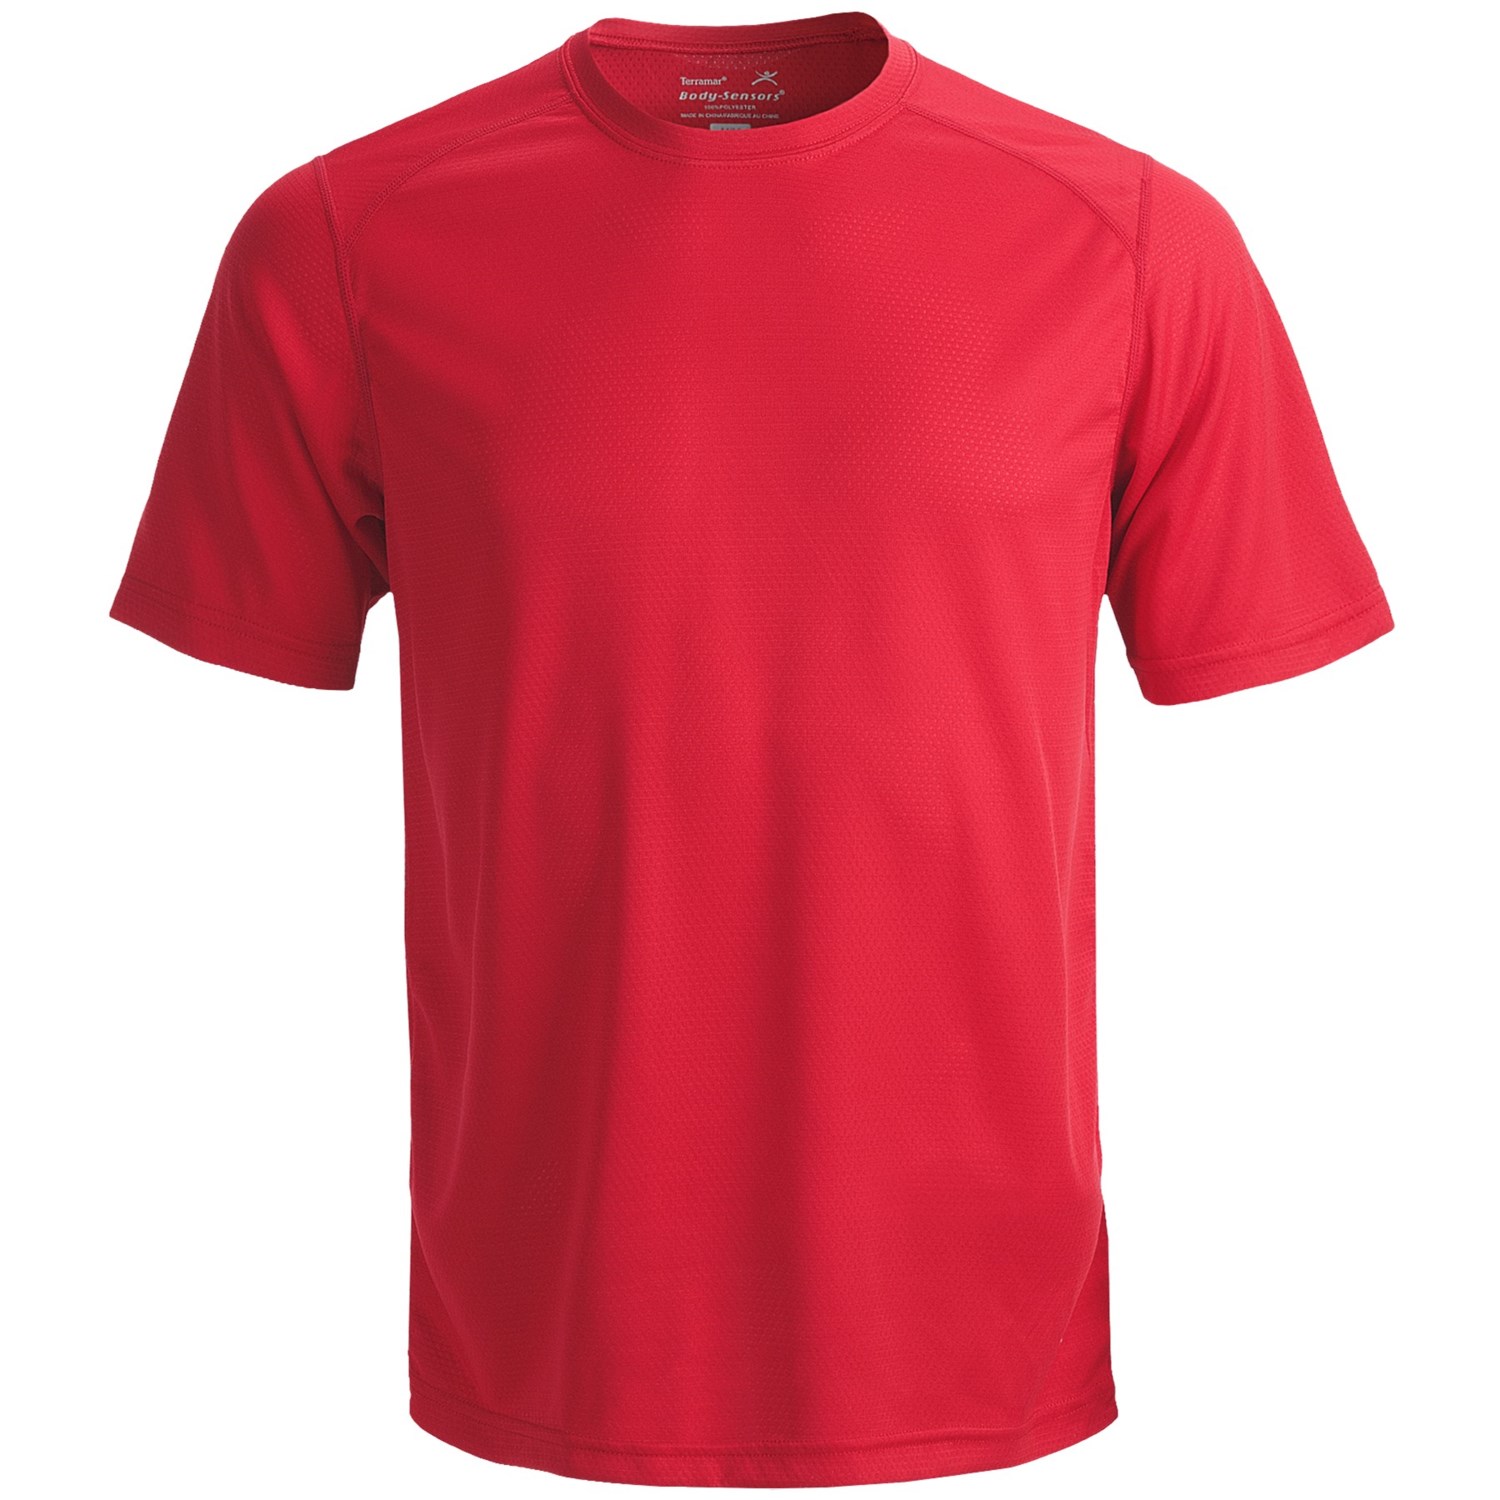 Terramar Helix T Shirt   Lightweight, UPF 25+, Short Sleeve (For Men 